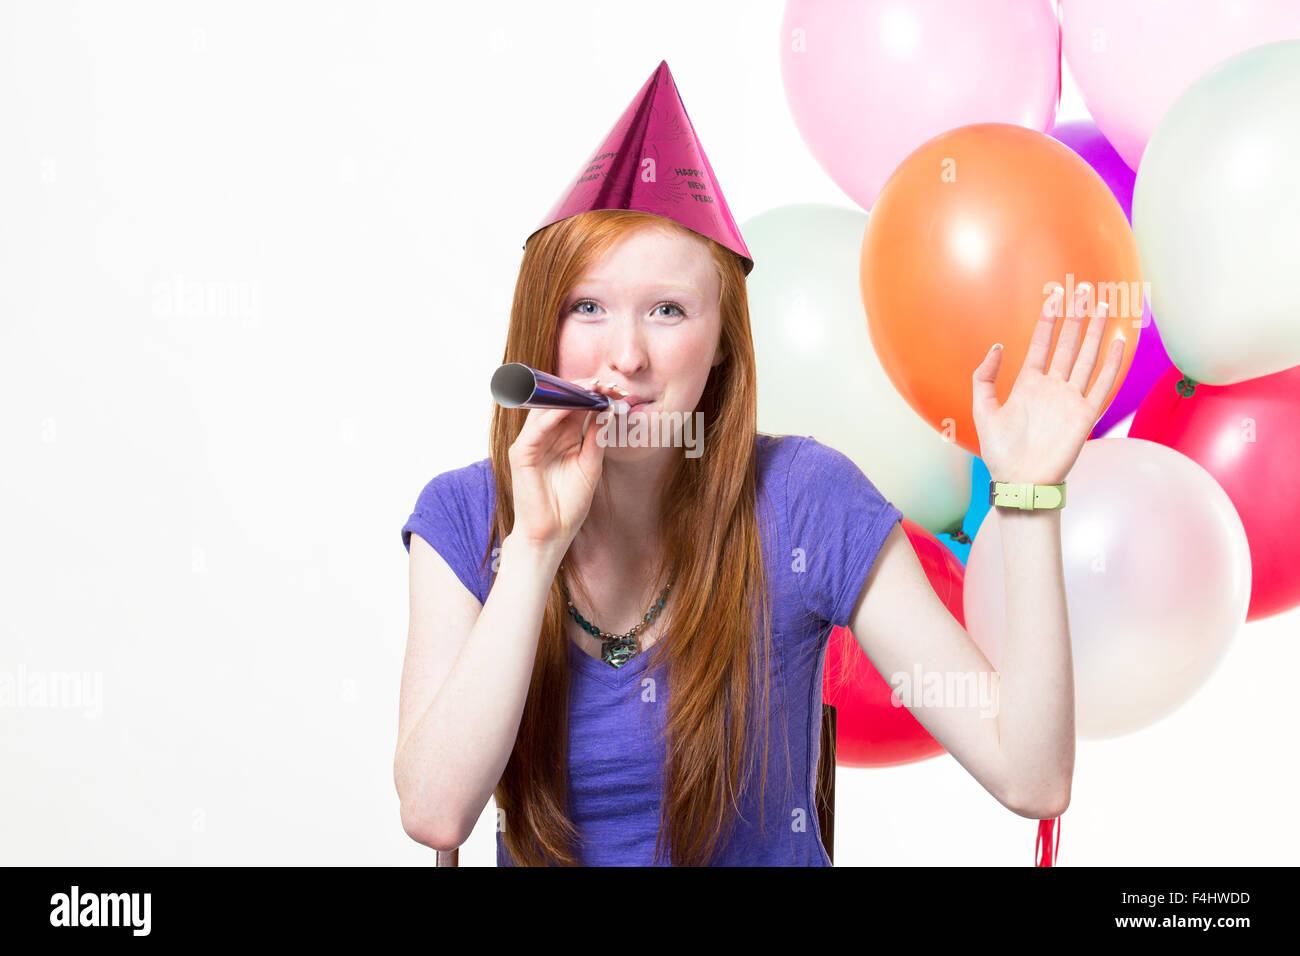 Jeune fille à célébrer un anniversaire Fond blanc Banque D'Images